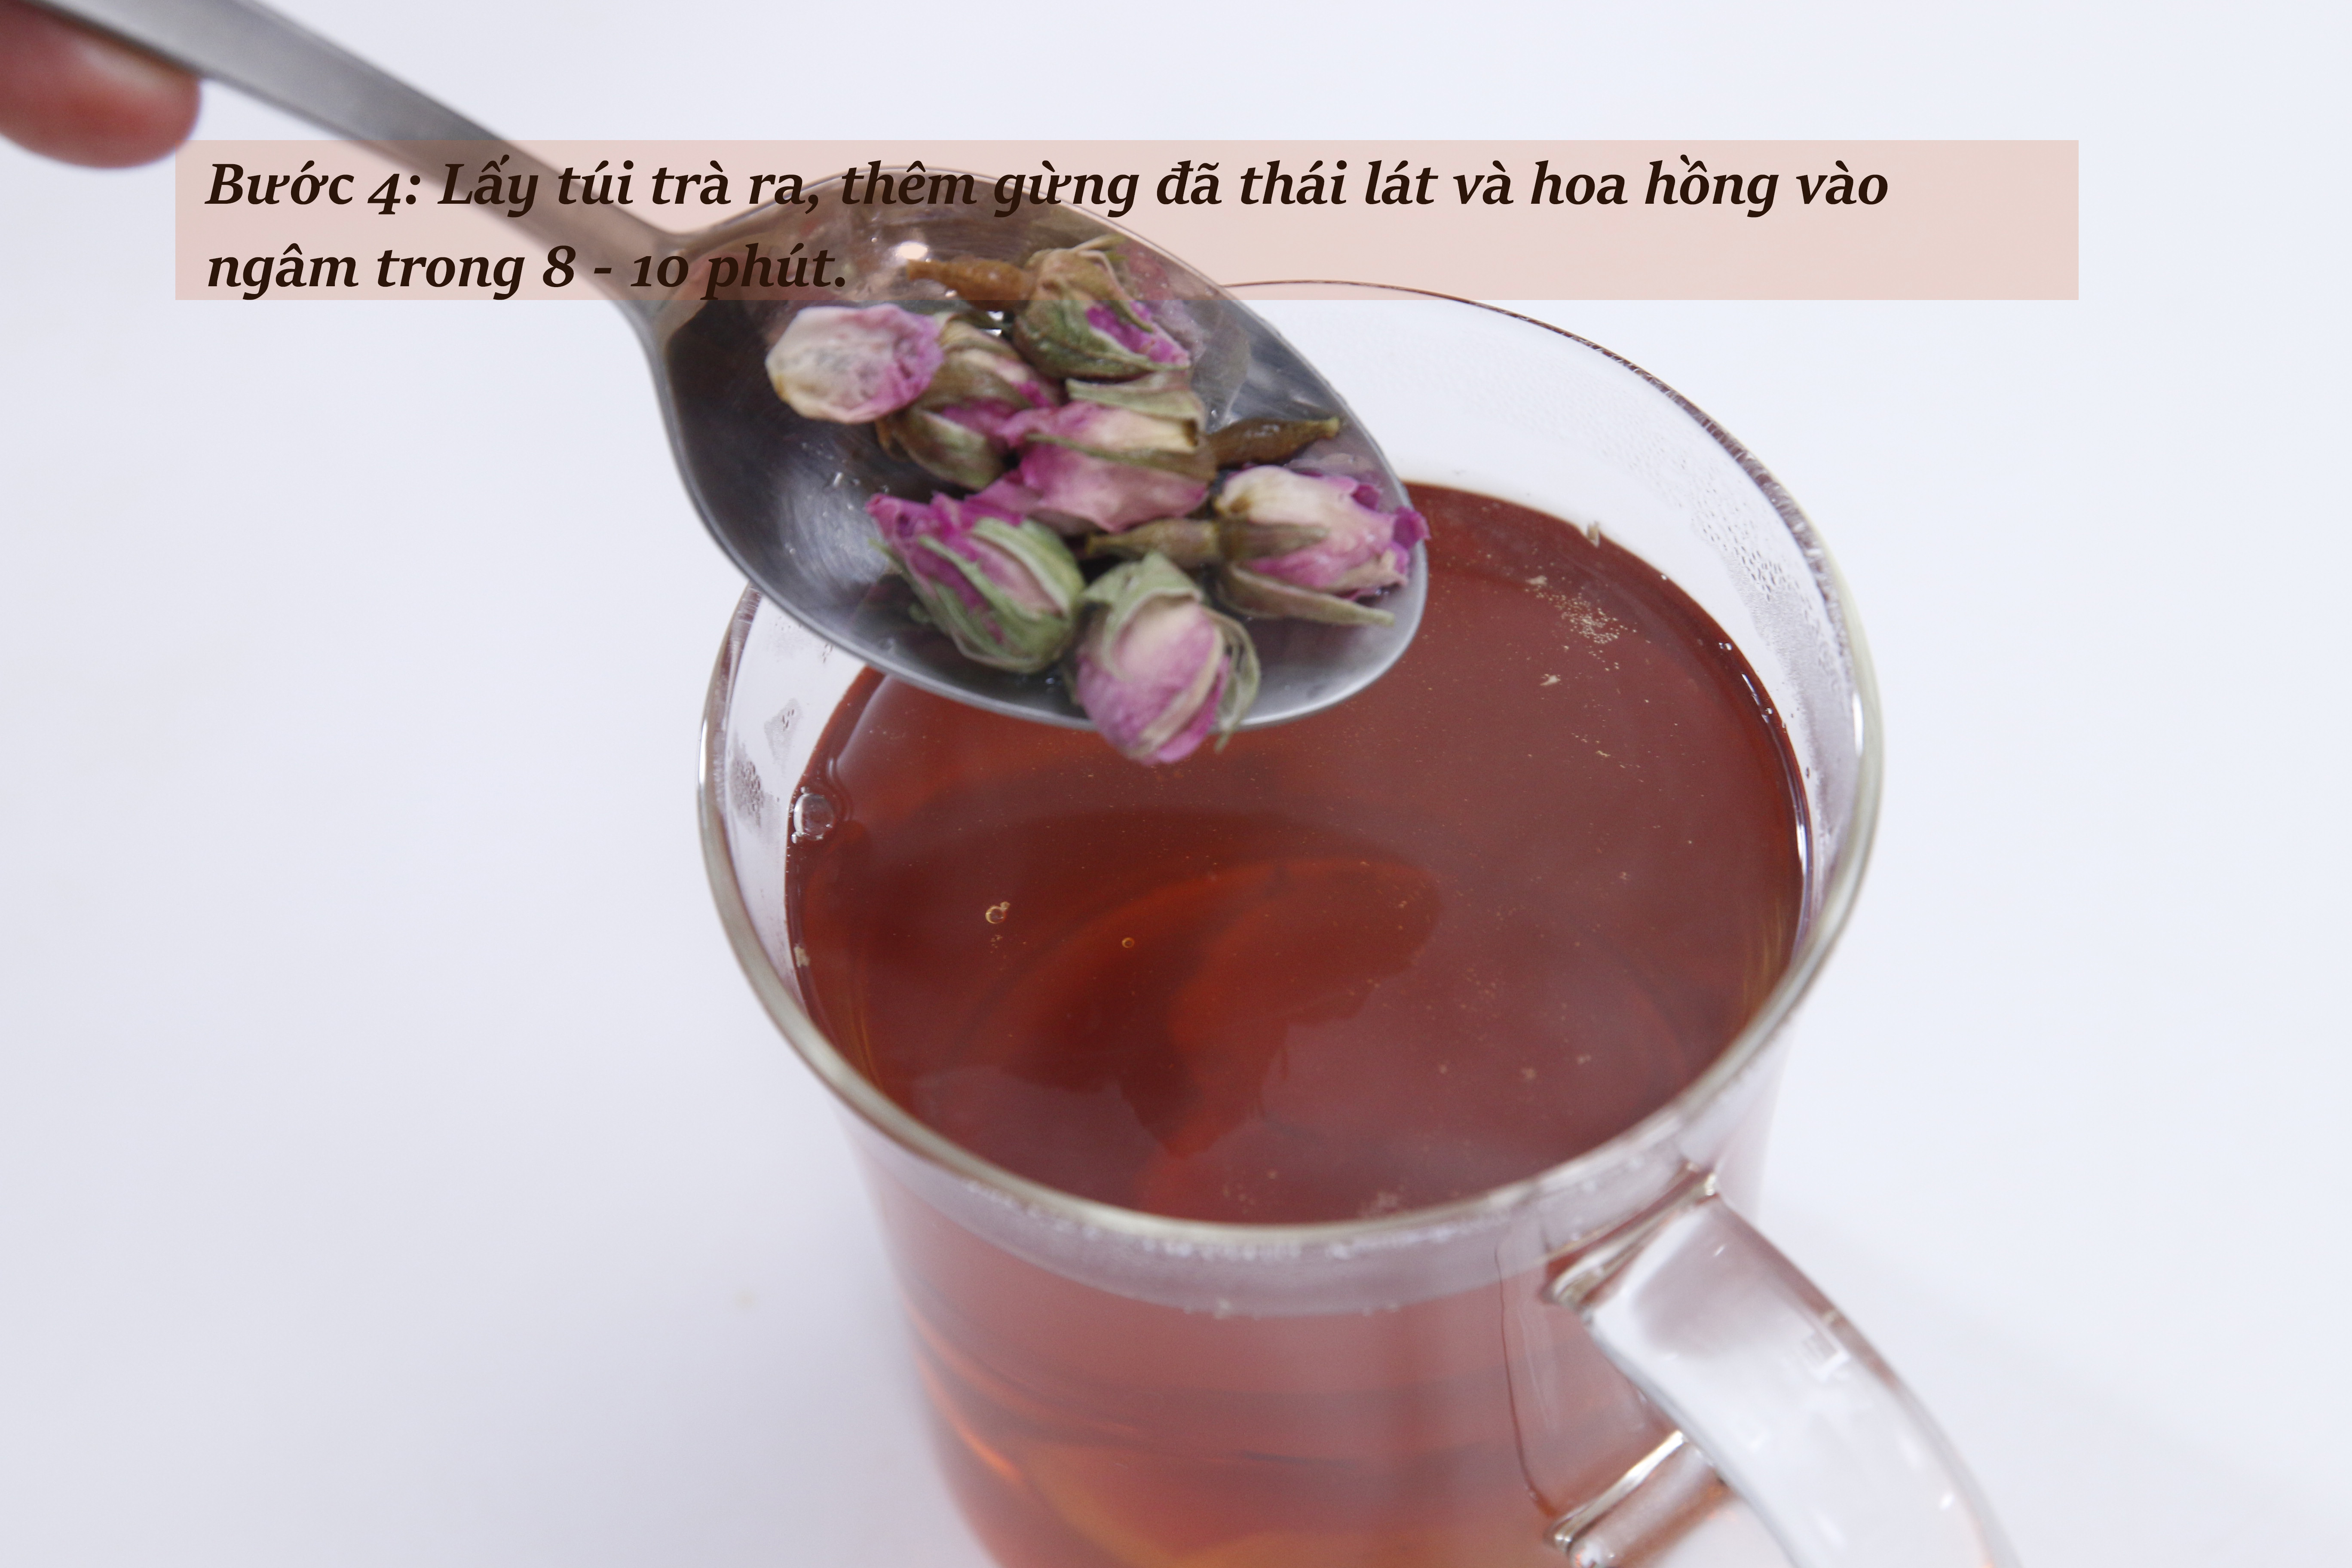 Tự làm trà hoa hồng, mật ong ấm lòng ngày mưa gió - Ảnh 6